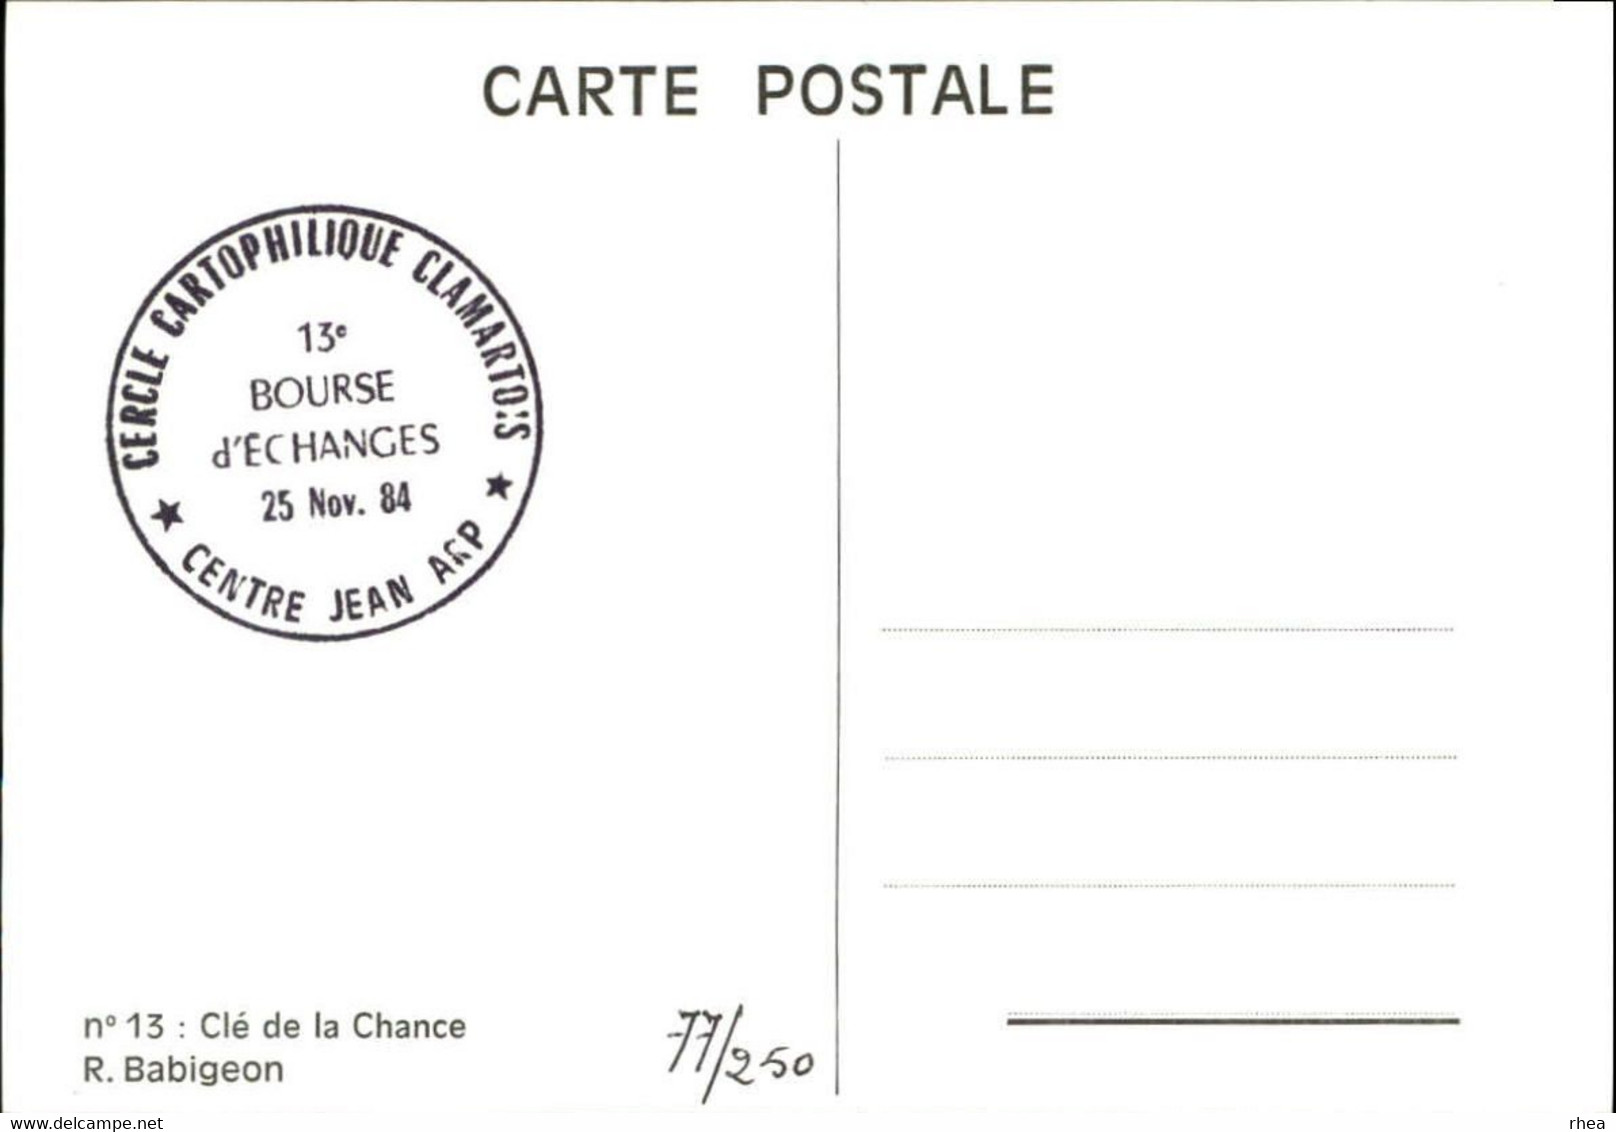 SALONS DE COLLECTIONS - Bourse D'échanges - Salon De Cartes Postales - Clarmart - Dessin De Babigeon - 1984 - Bourses & Salons De Collections